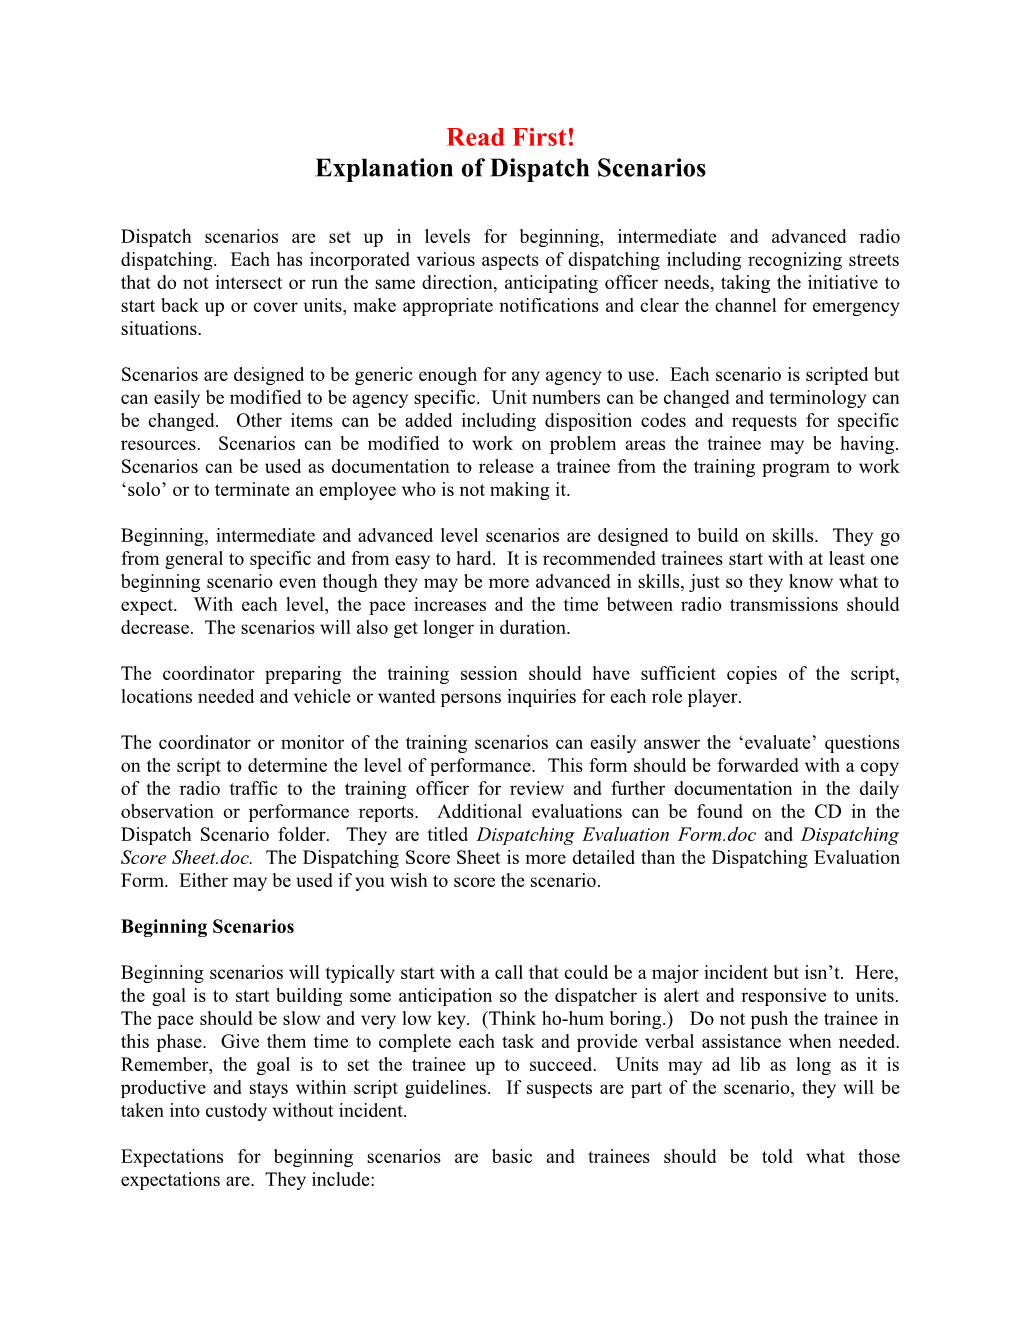 Explanation of Dispatch Scenarios